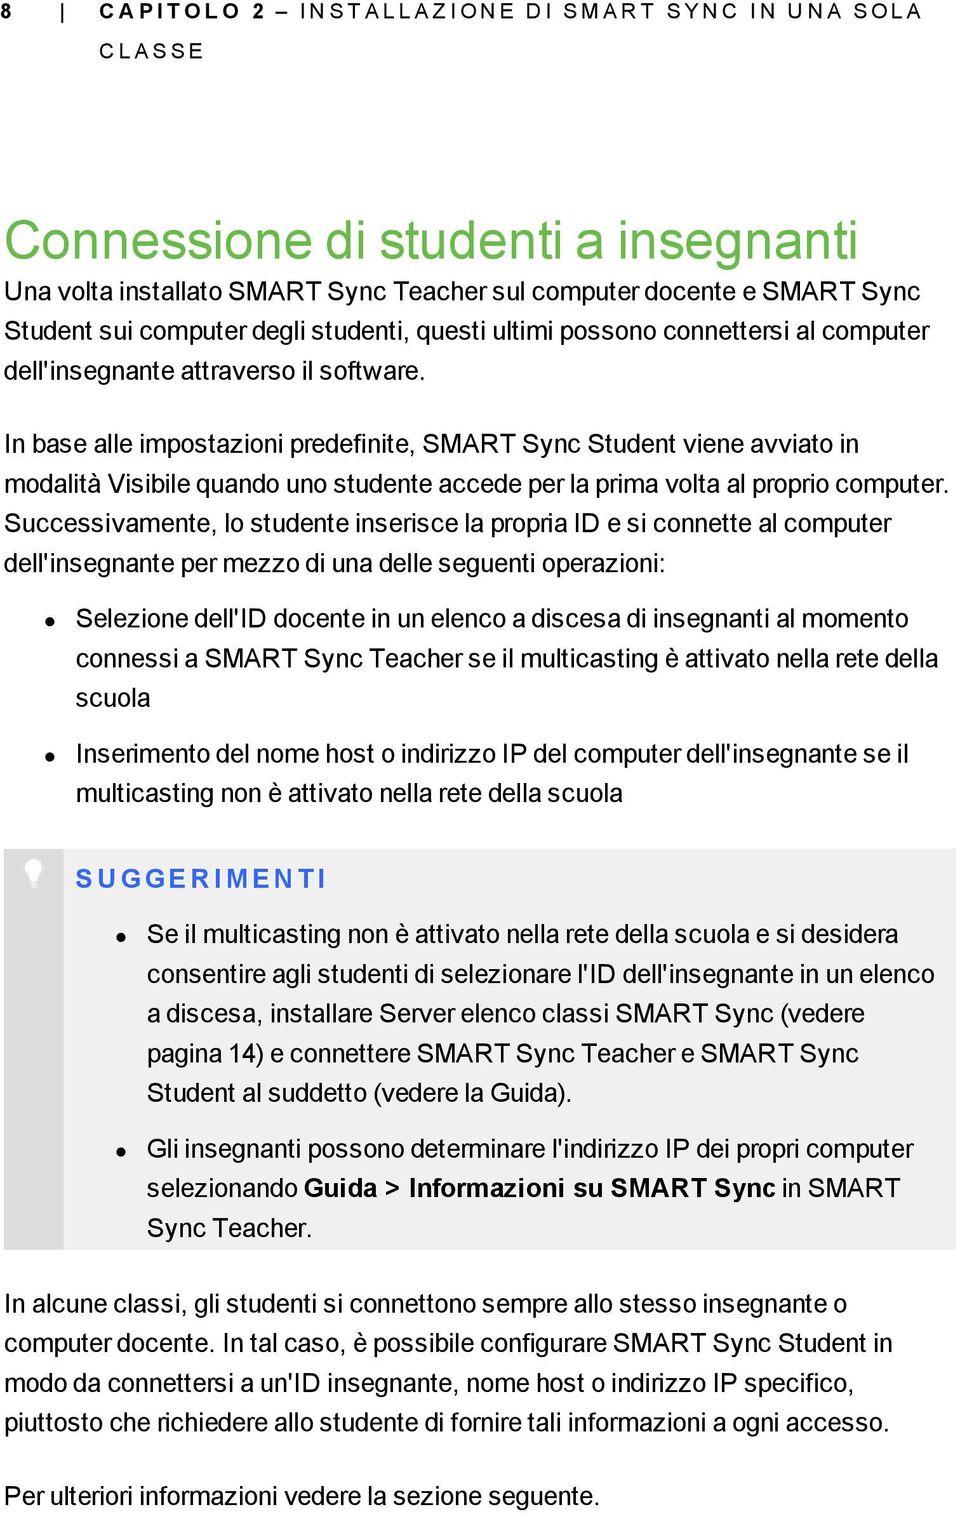 In base alle impostazioni predefinite, SMART Sync Student viene avviato in modalità Visibile quando uno studente accede per la prima volta al proprio computer.